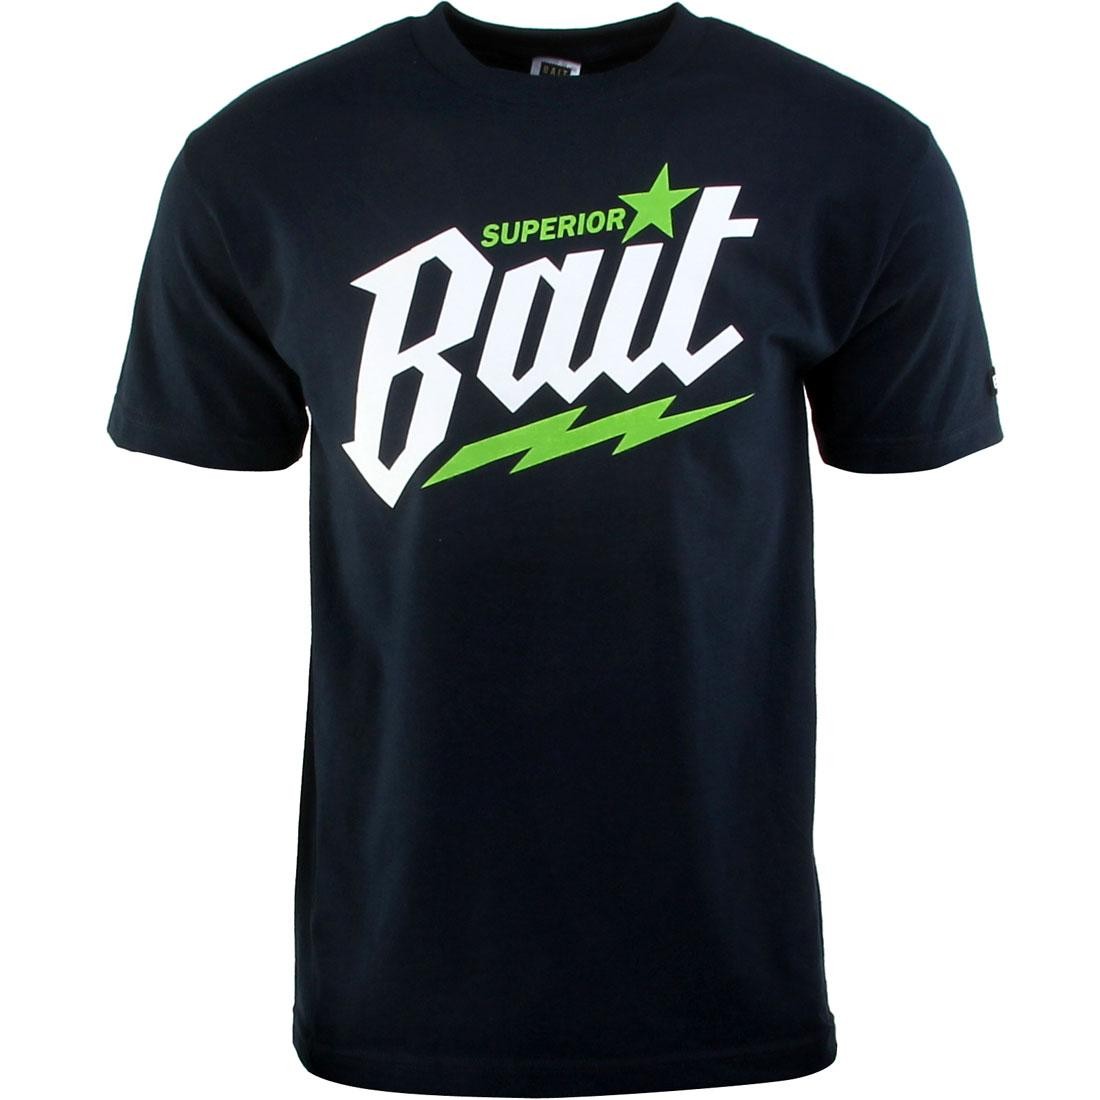 BAIT Superior BAIT Tee (navy / white / green)